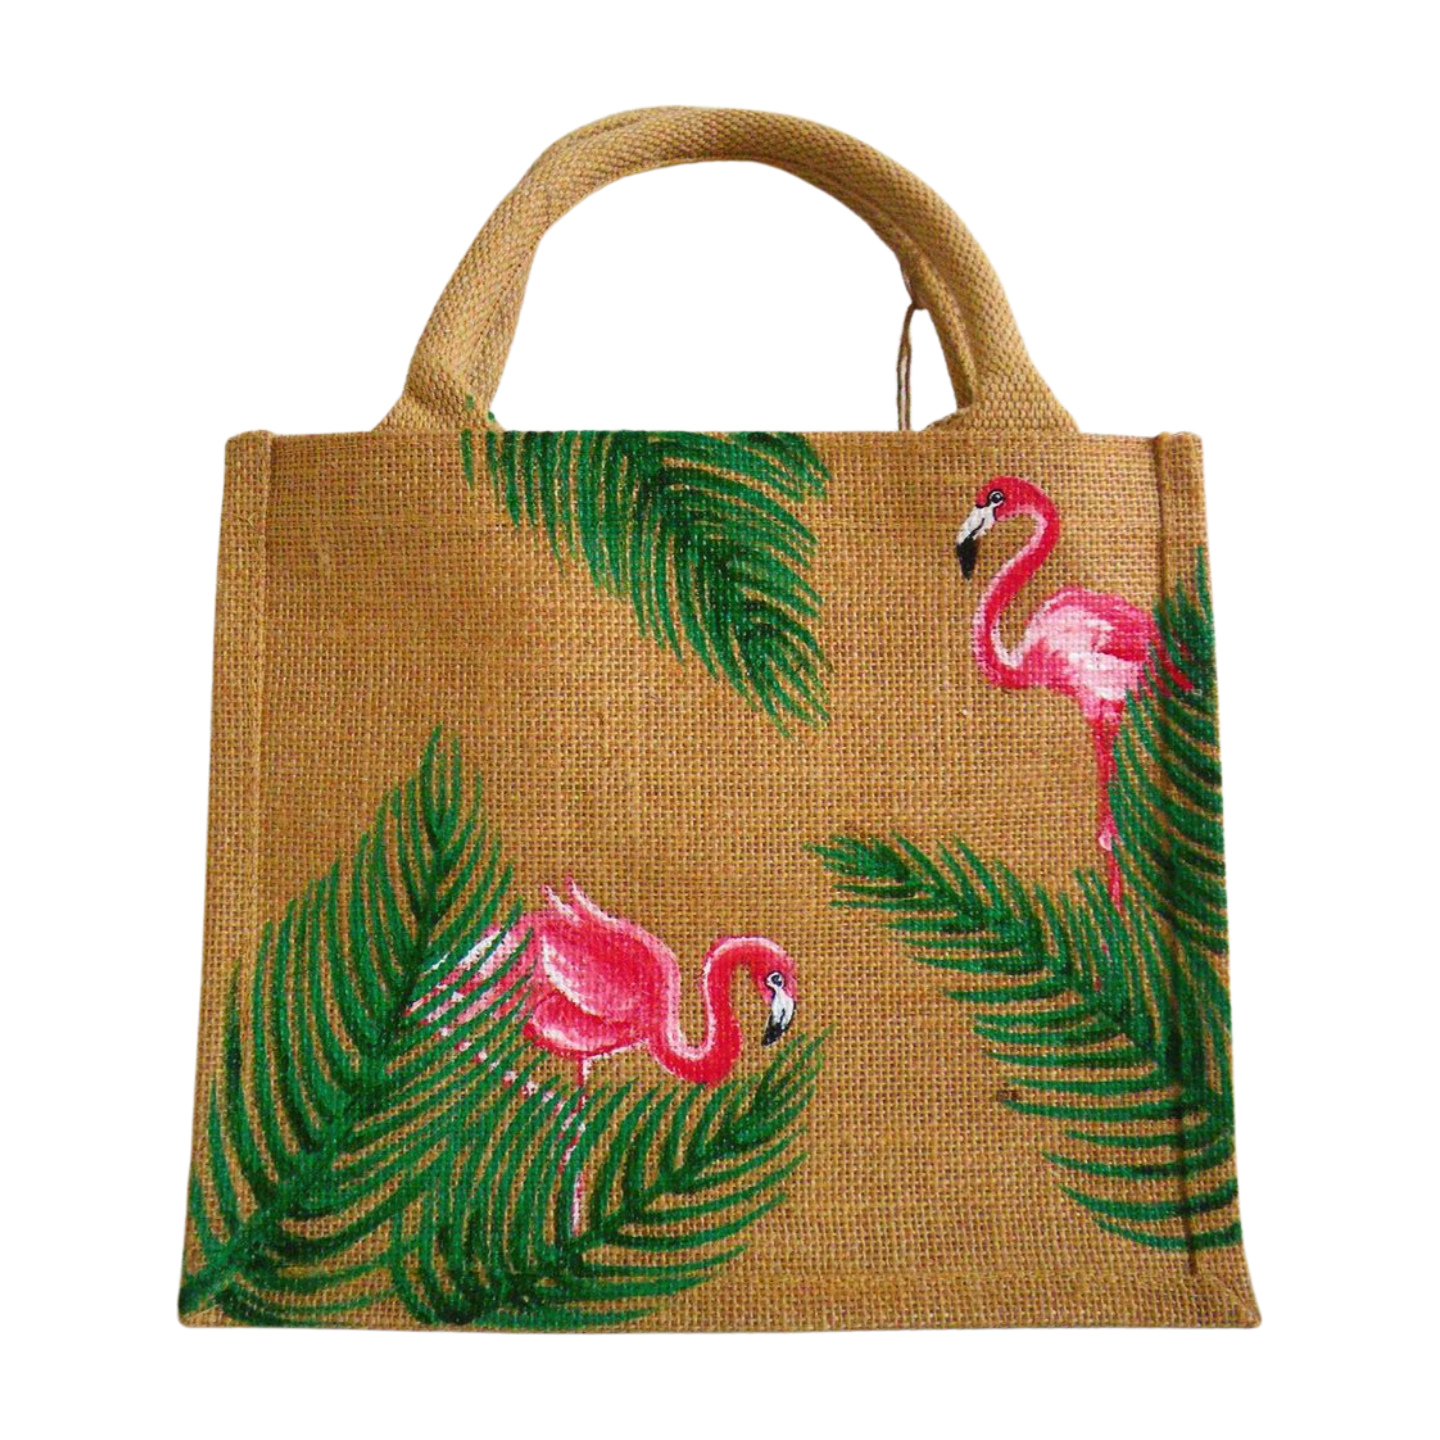 Petit sac en jute avec flamants roses et palmes peints à la main